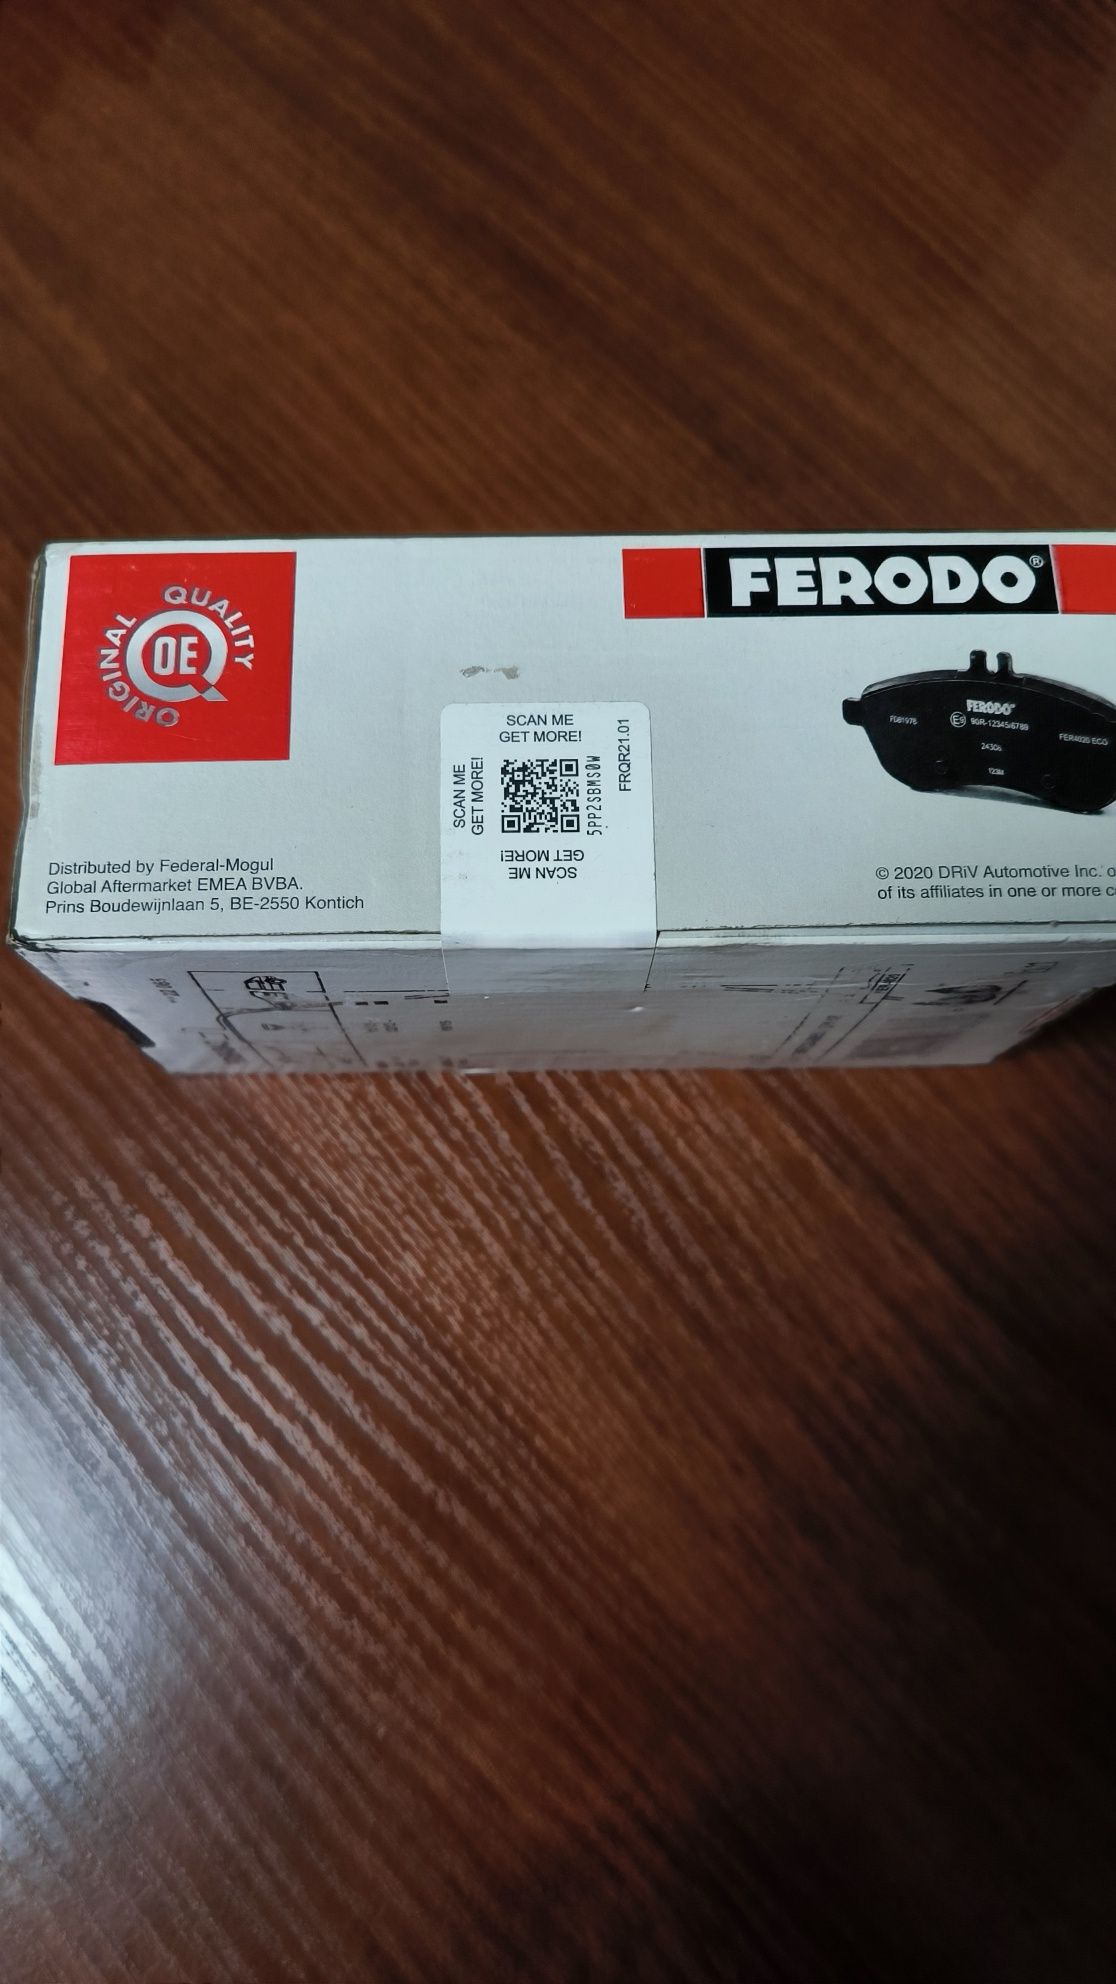 Тормозные колодки Ferodo FDB4843 Nissan Rogue Sport